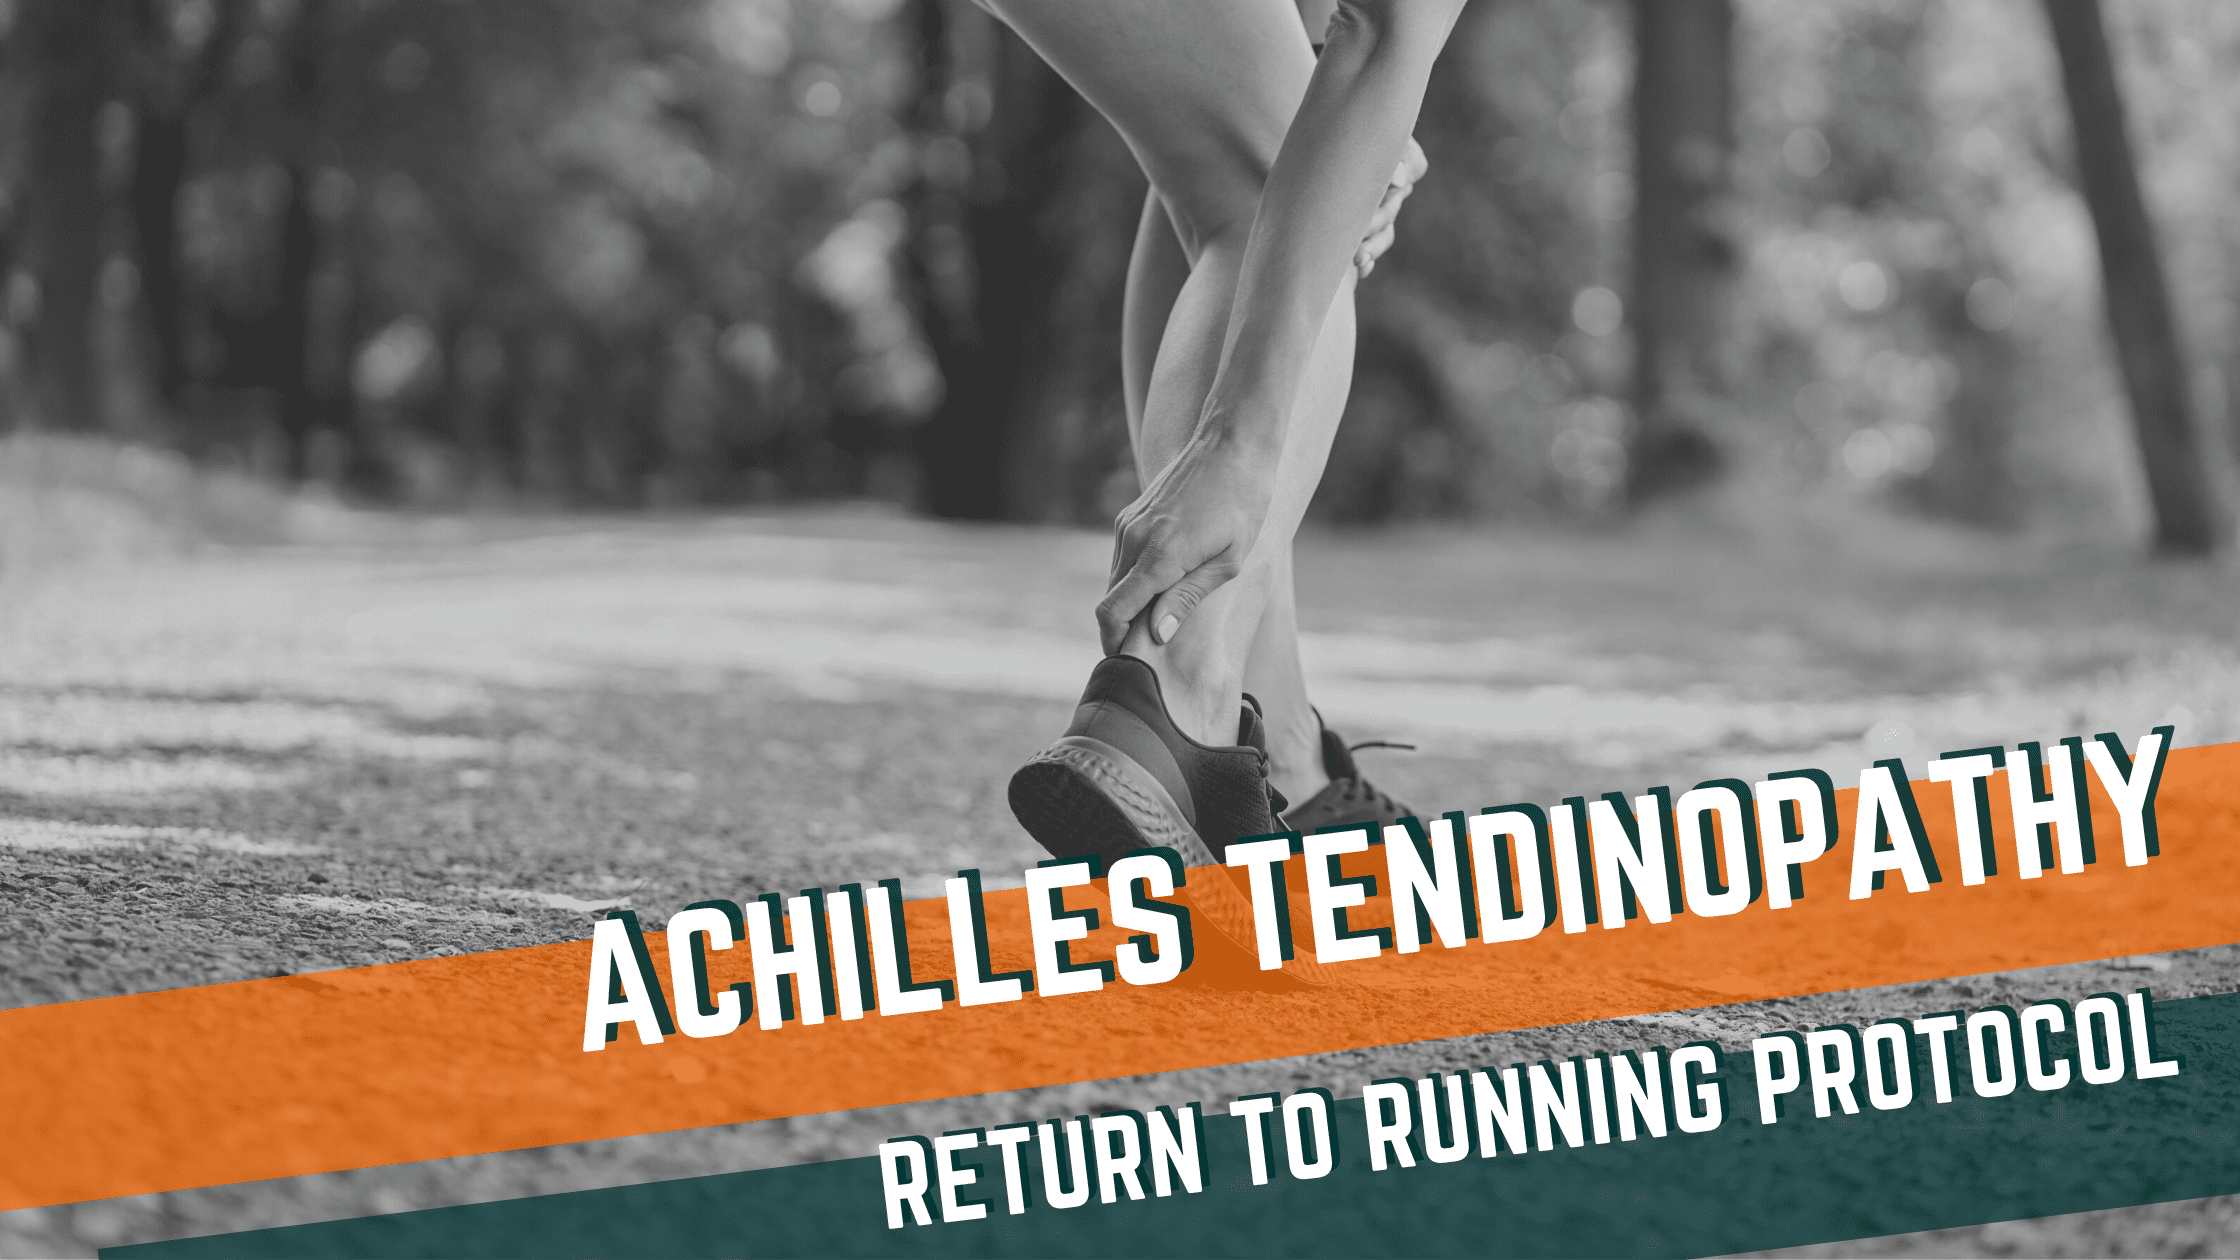 Achilles Tendinopathy Return to Running Protocol